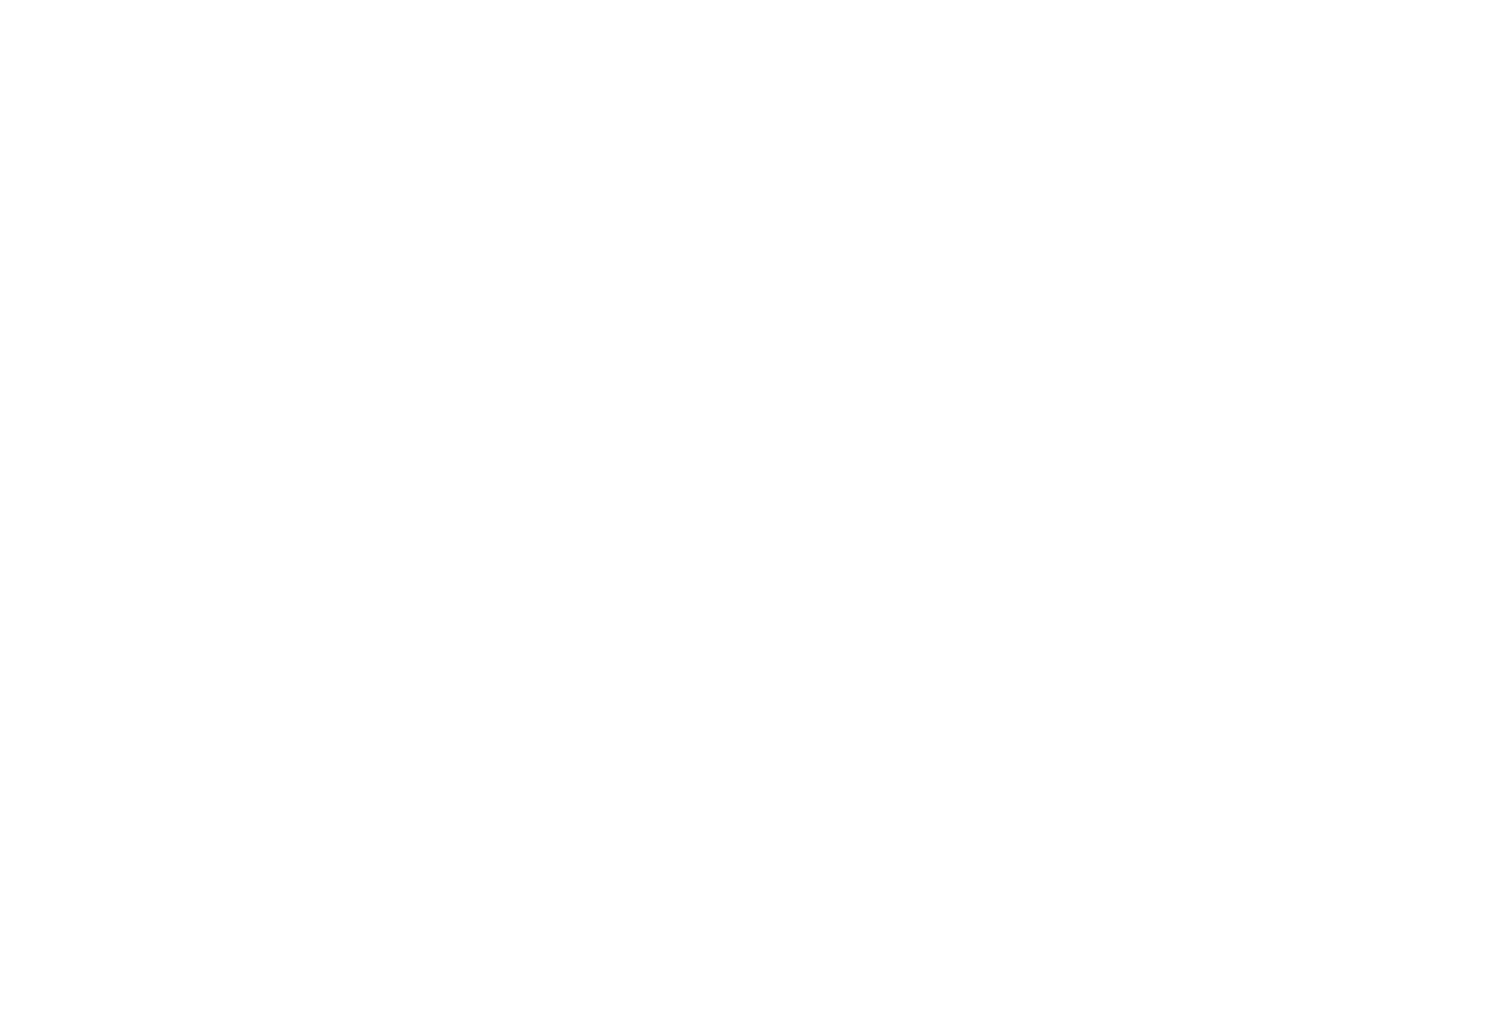 Molly McGlynn